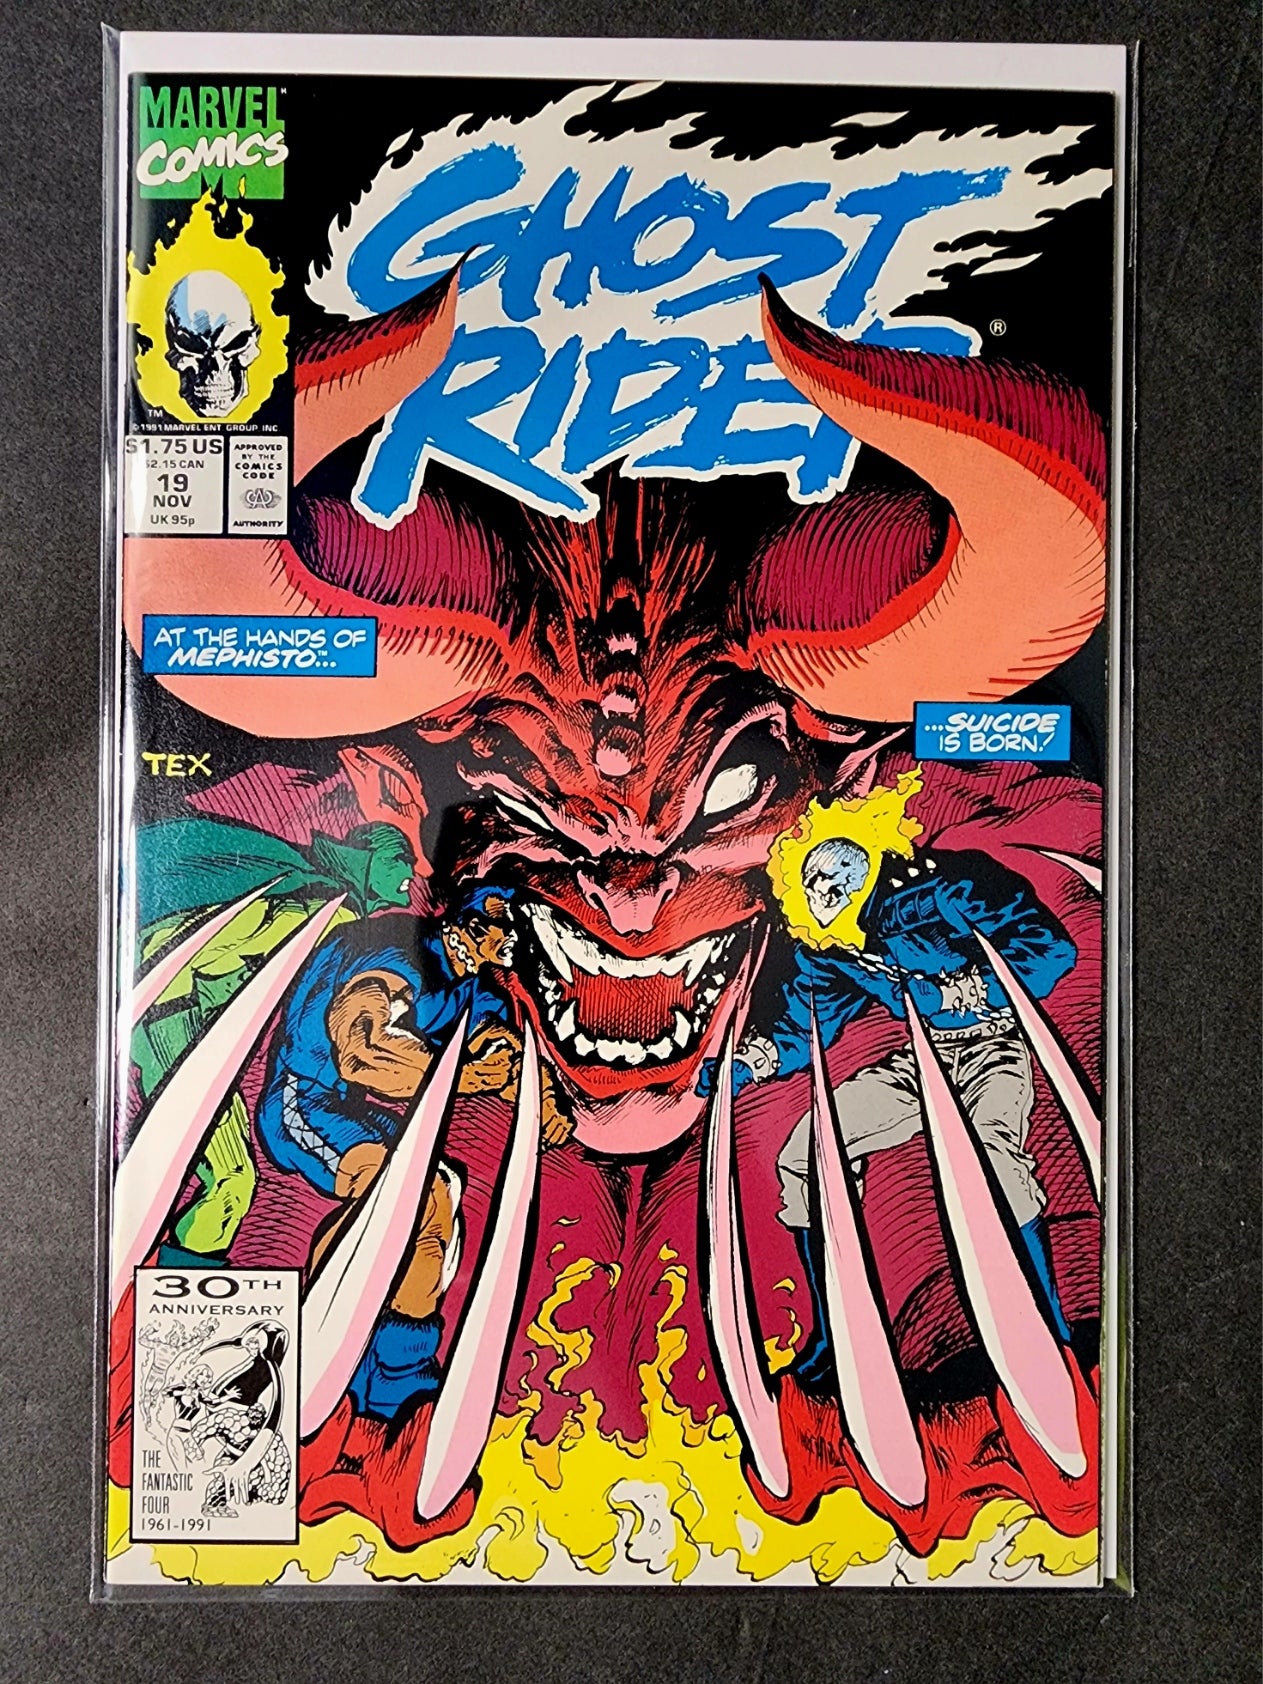 Ghost Rider (Vol. 2) #19 (VF)